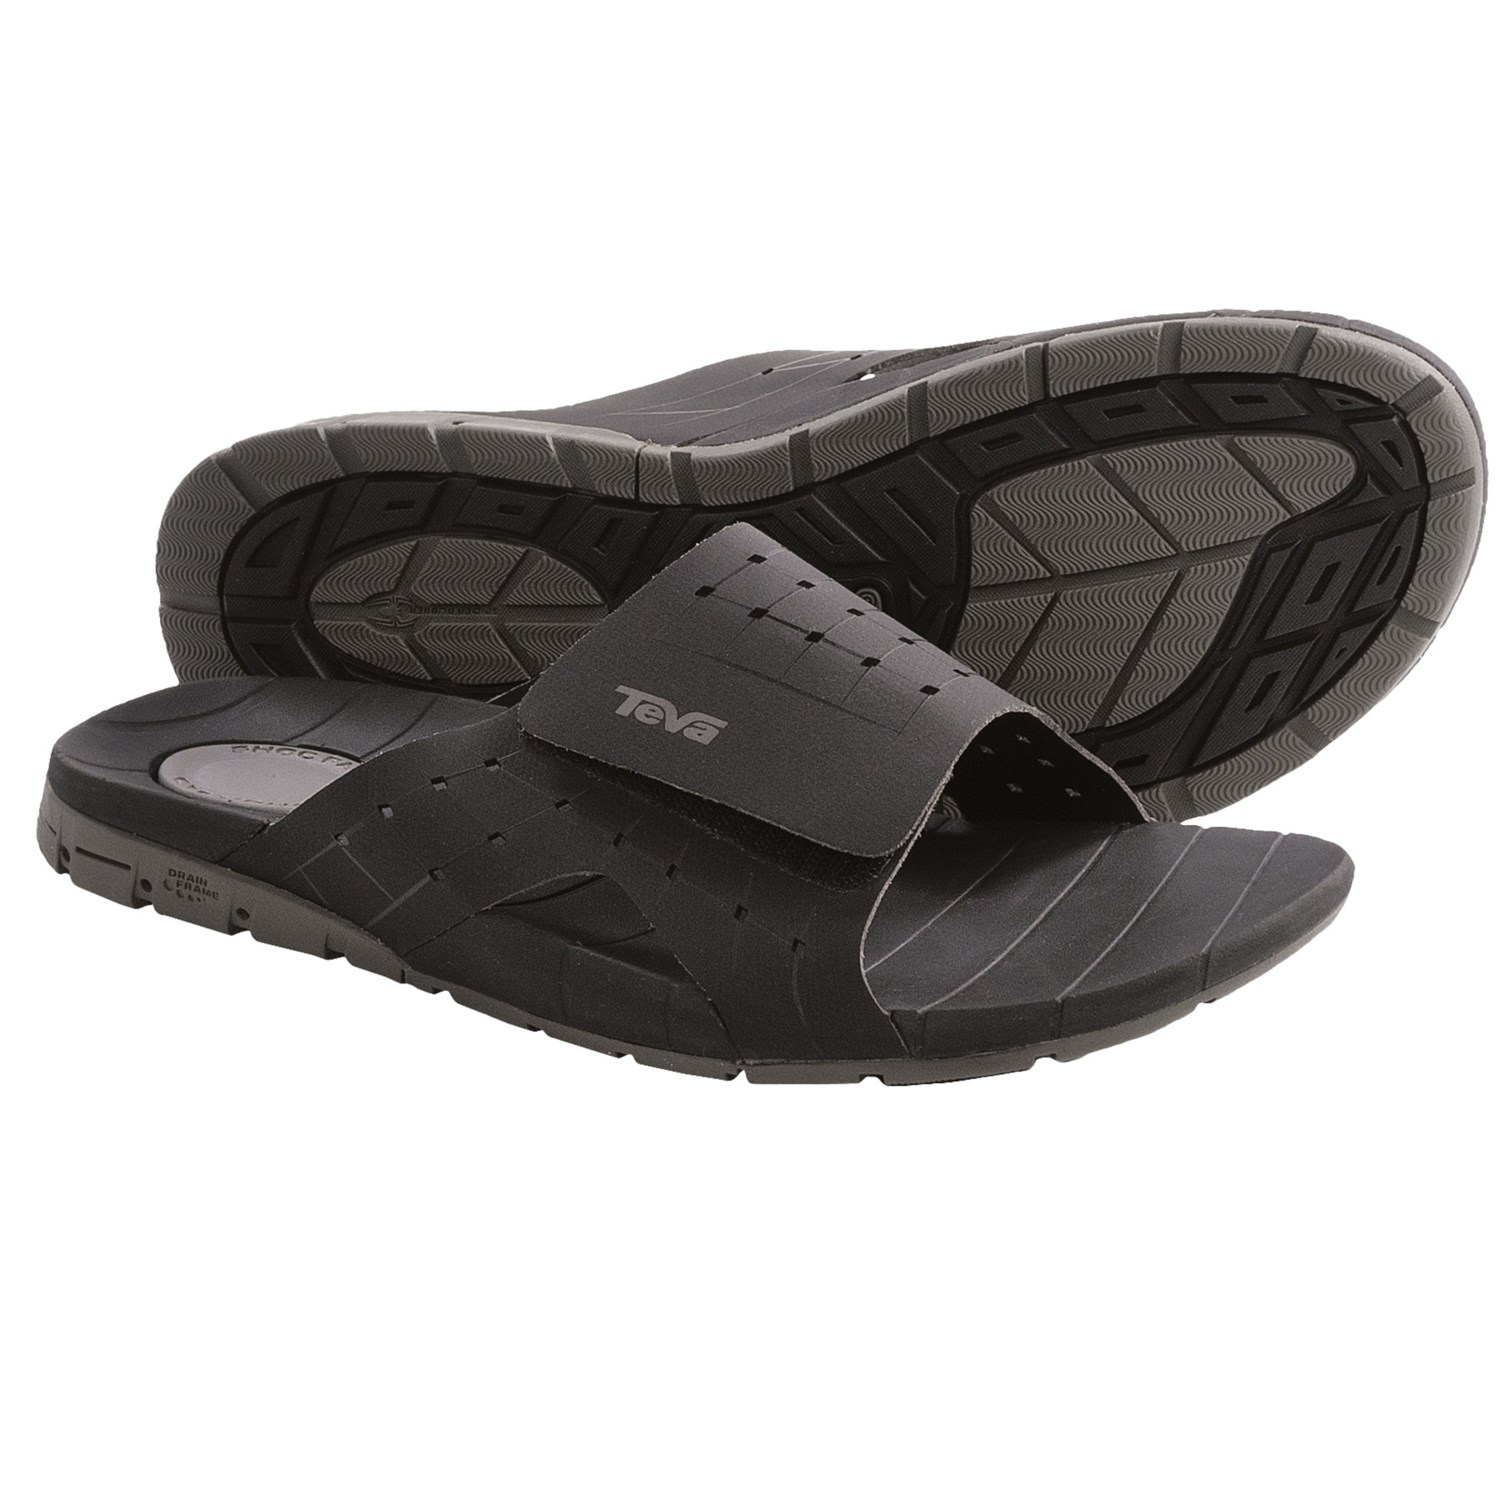 Teva Gnarslide Sandals (For Men) - Save 27%